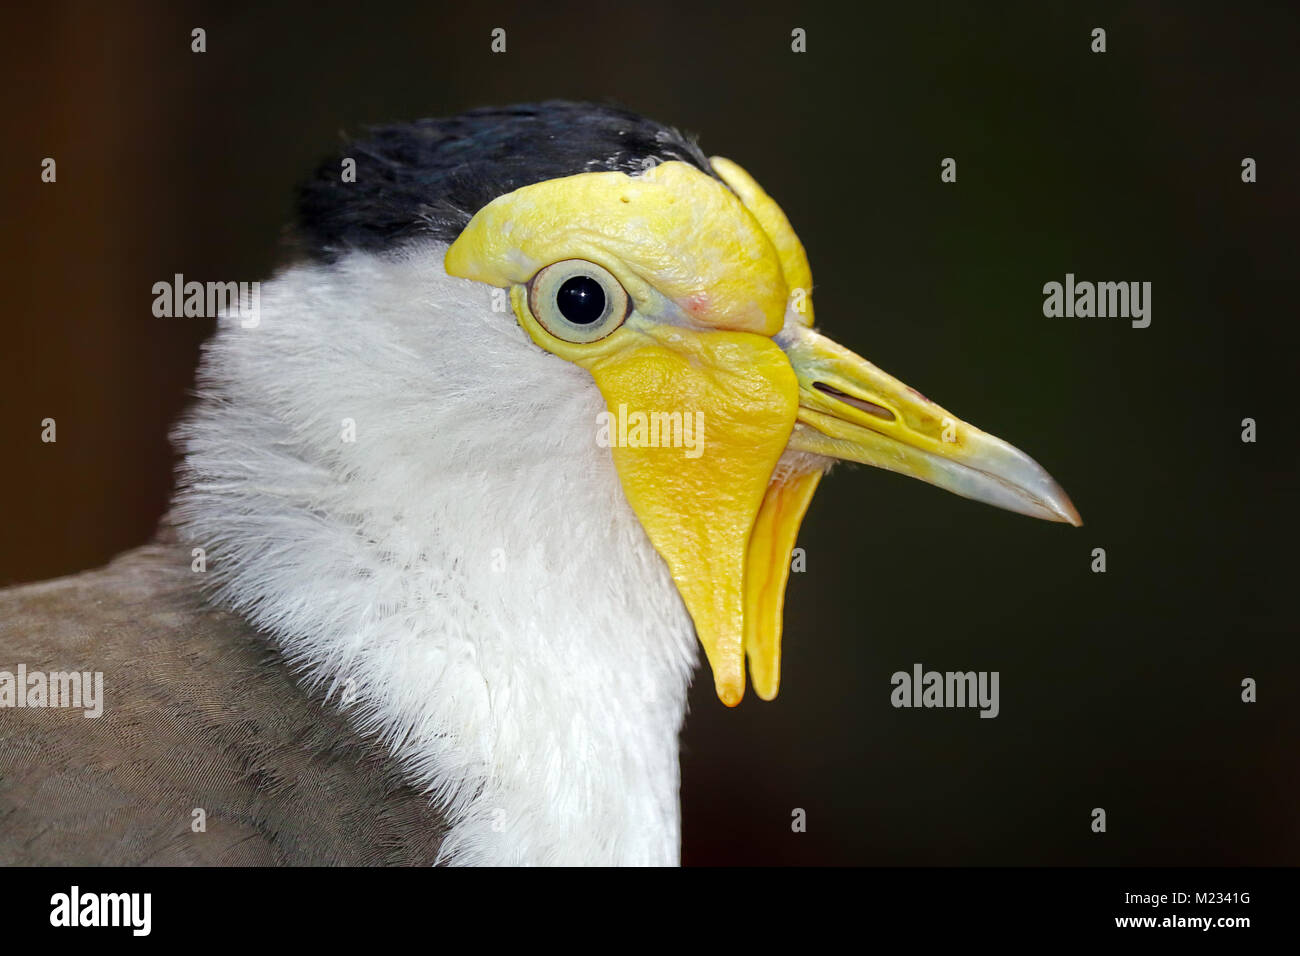 Tête bizarre d'un vanneau masqué (vanellus miles) en vue de profil Banque D'Images